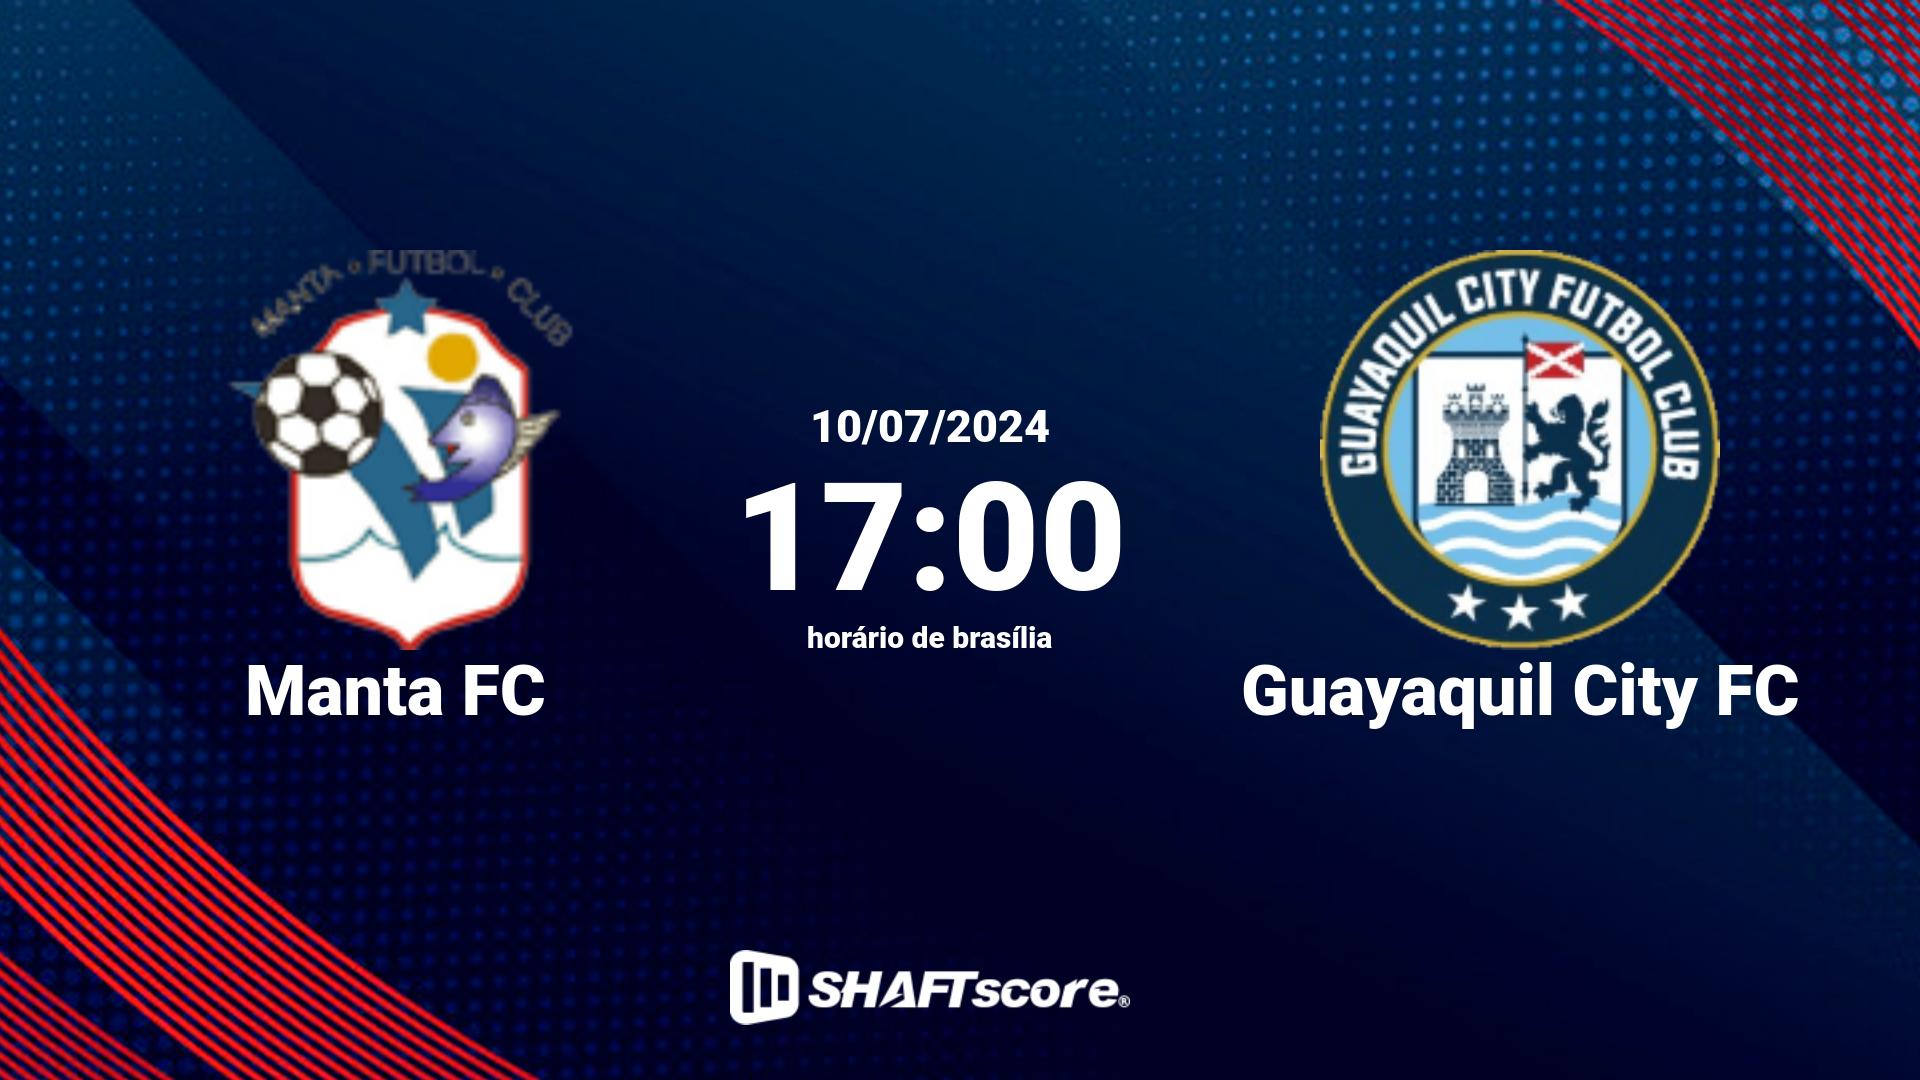 Estatísticas do jogo Manta FC vs Guayaquil City FC 10.07 17:00